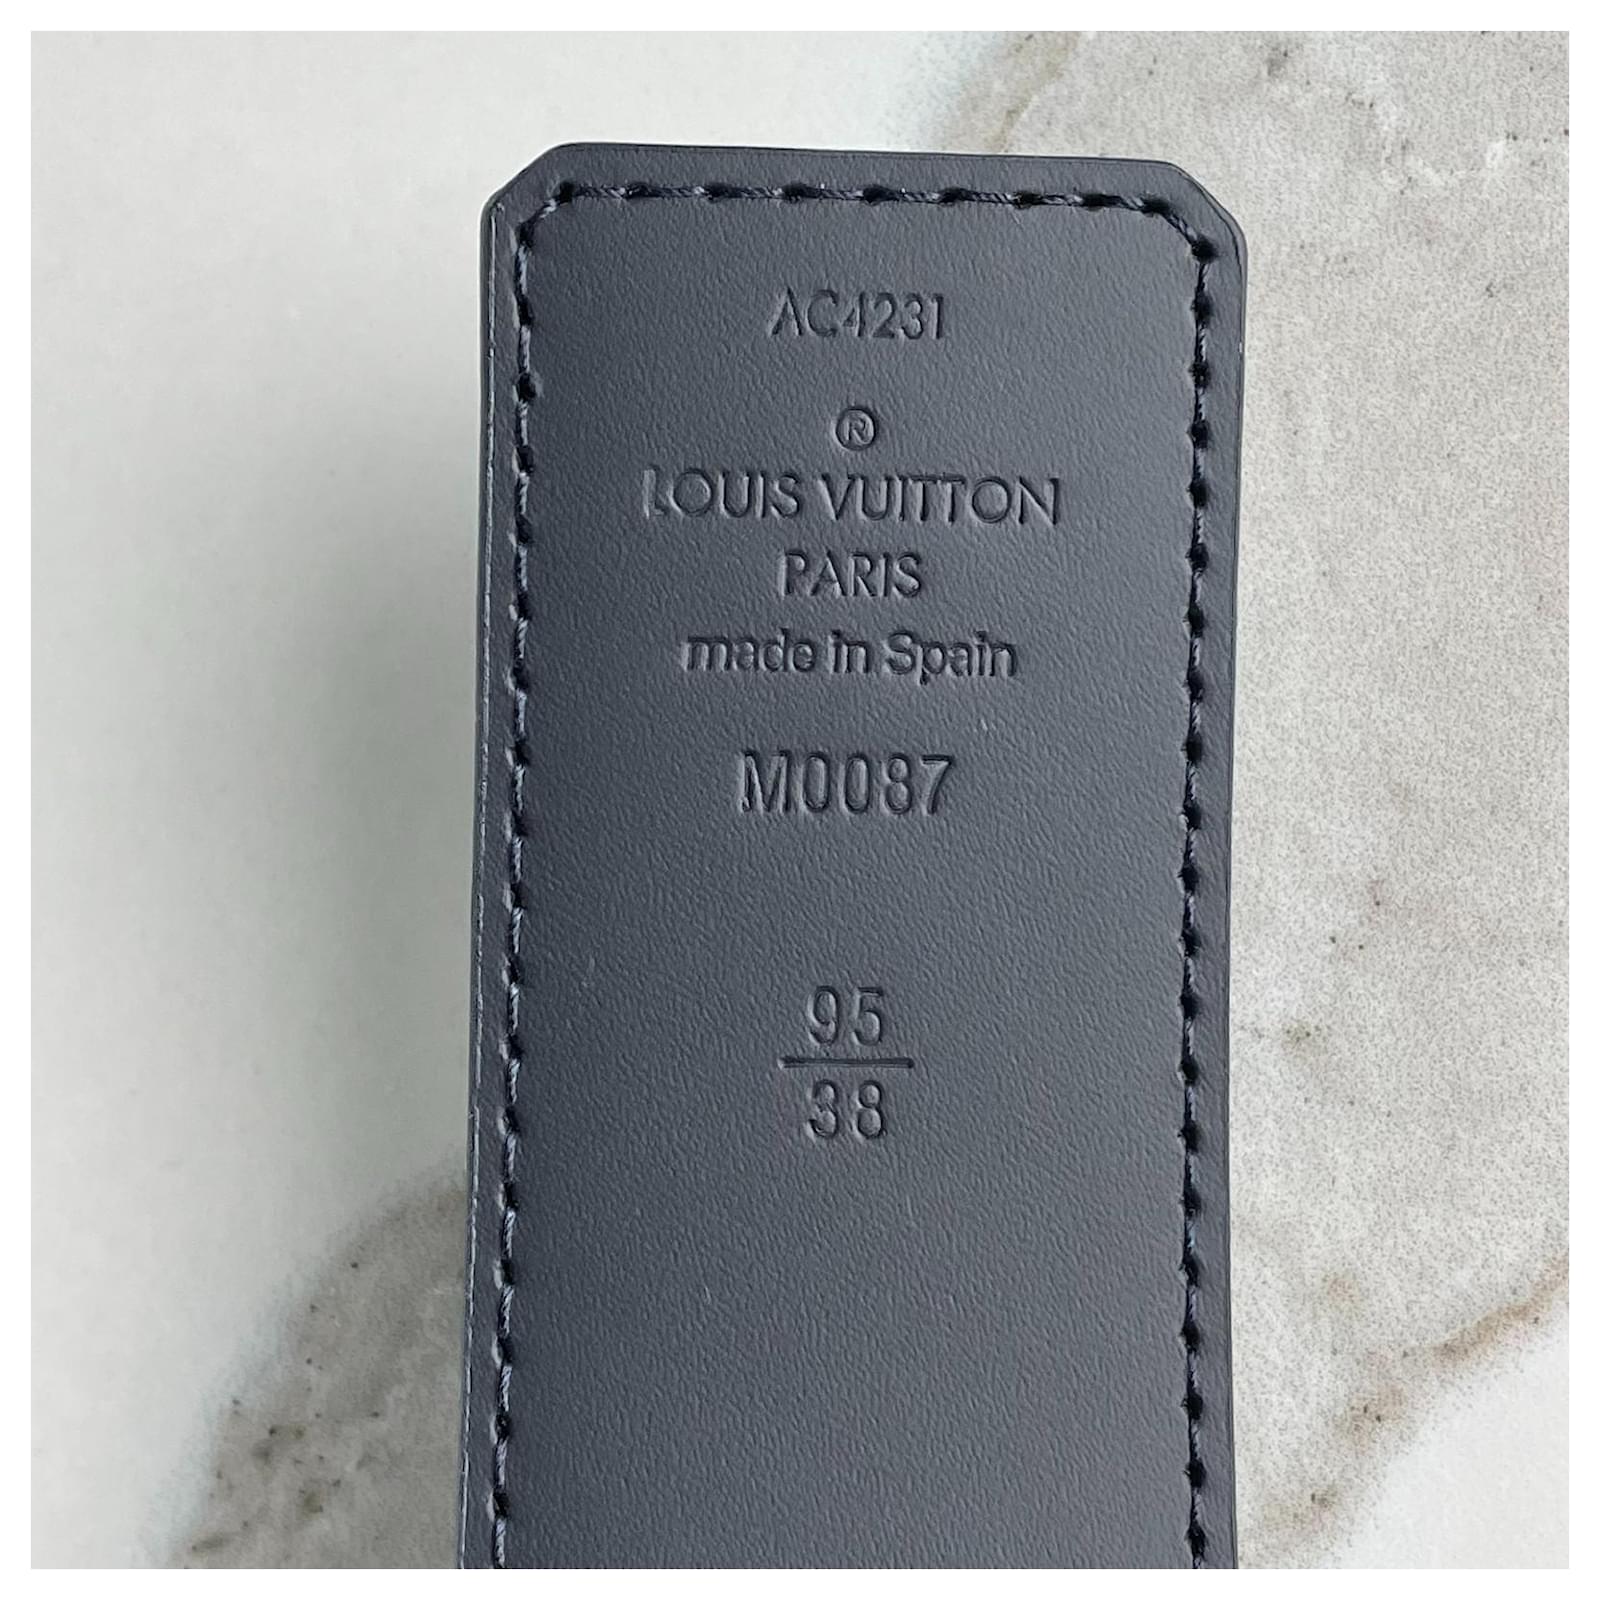 Louis Vuitton Initiales 40mm Reversible Belt M0087